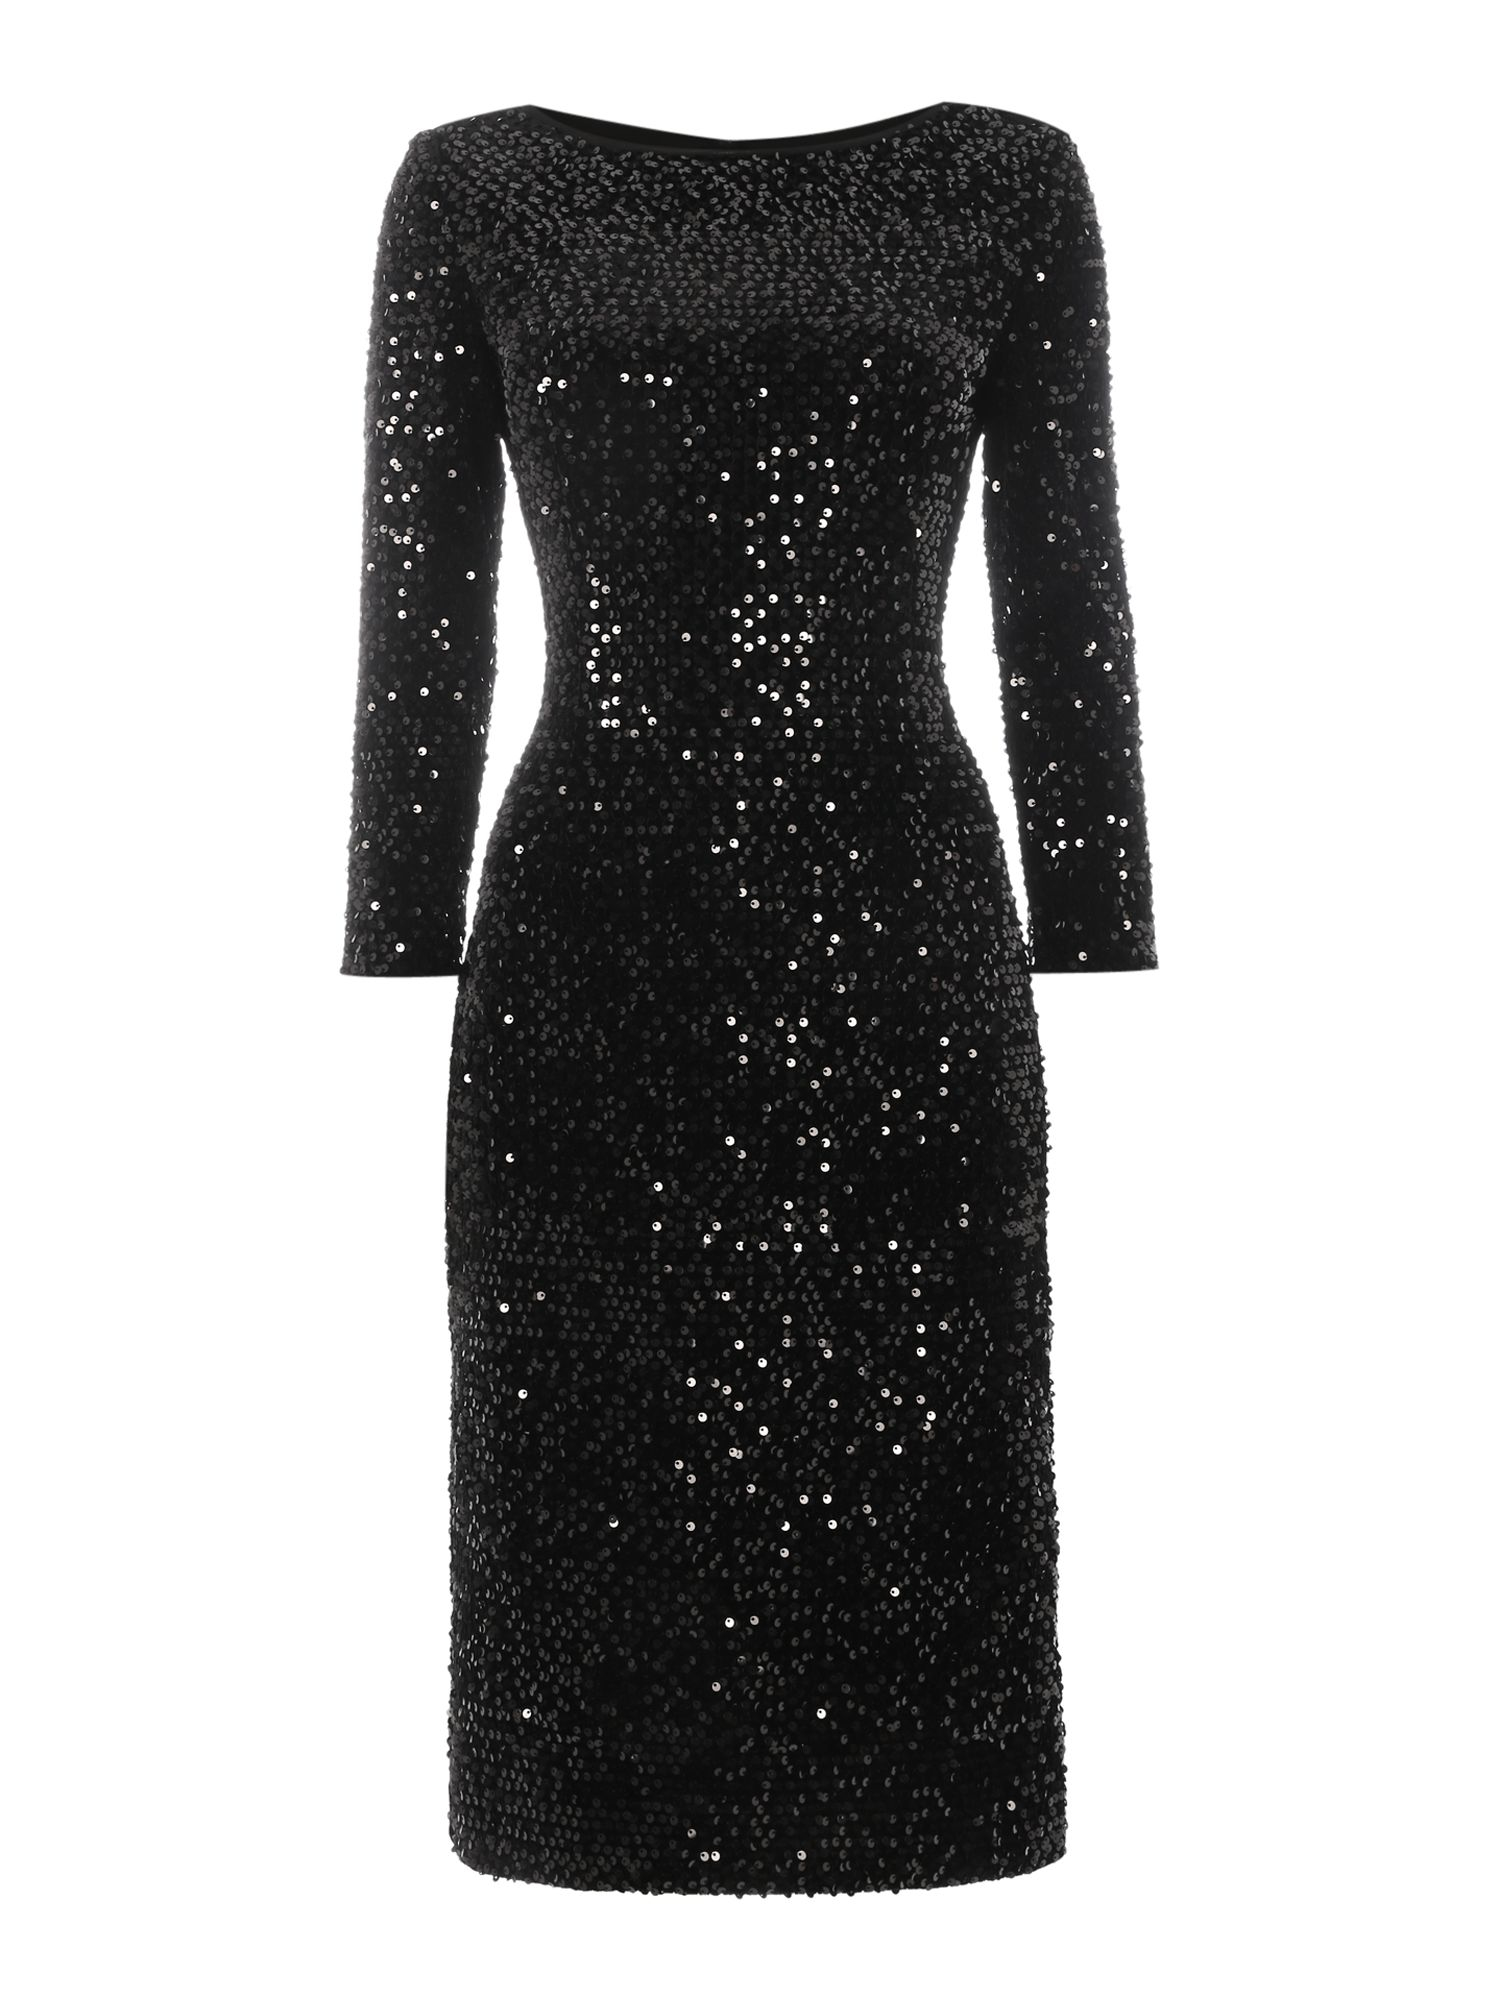 Eliza j Long Sleeve Sequin Shift Dress in Black | Lyst